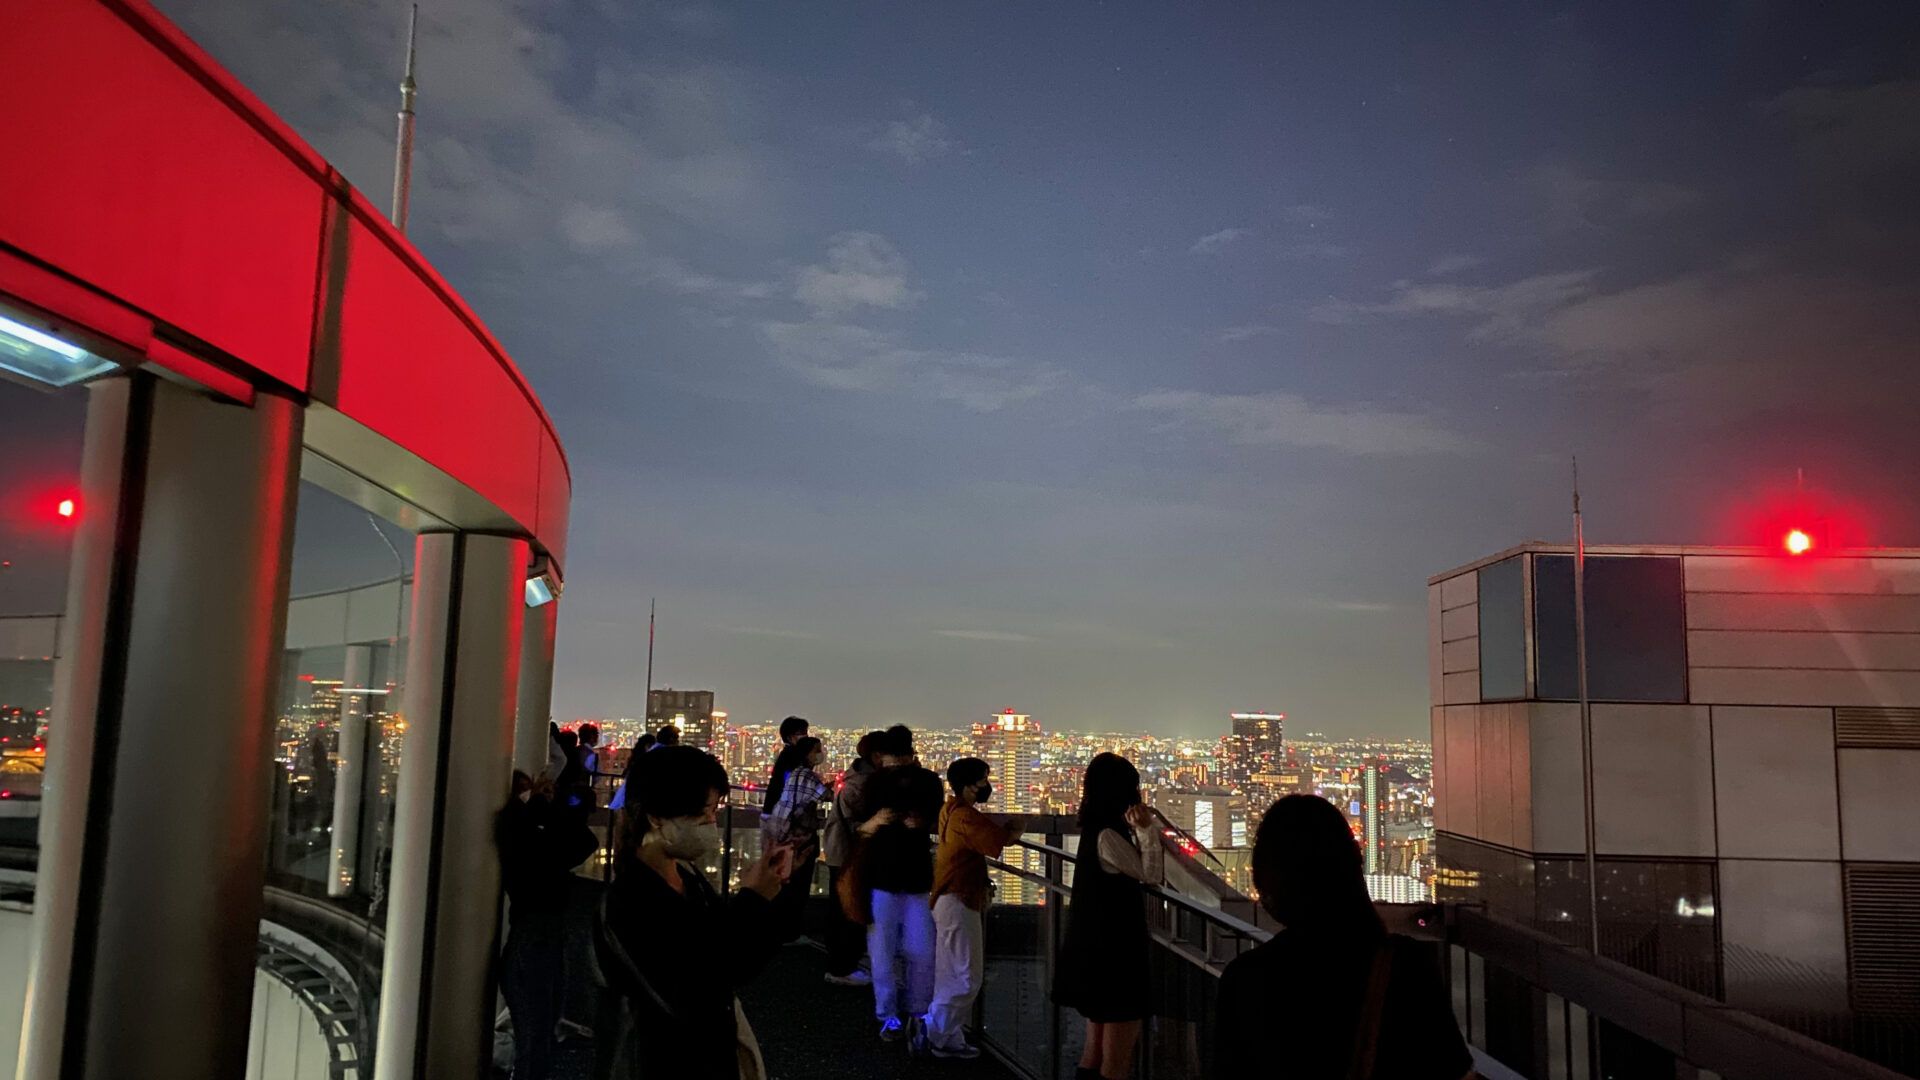 大阪の夜景を一望できる！梅田スカイビル空中庭園に行ってきた 空中庭園は、独特のデザインをした大展望台